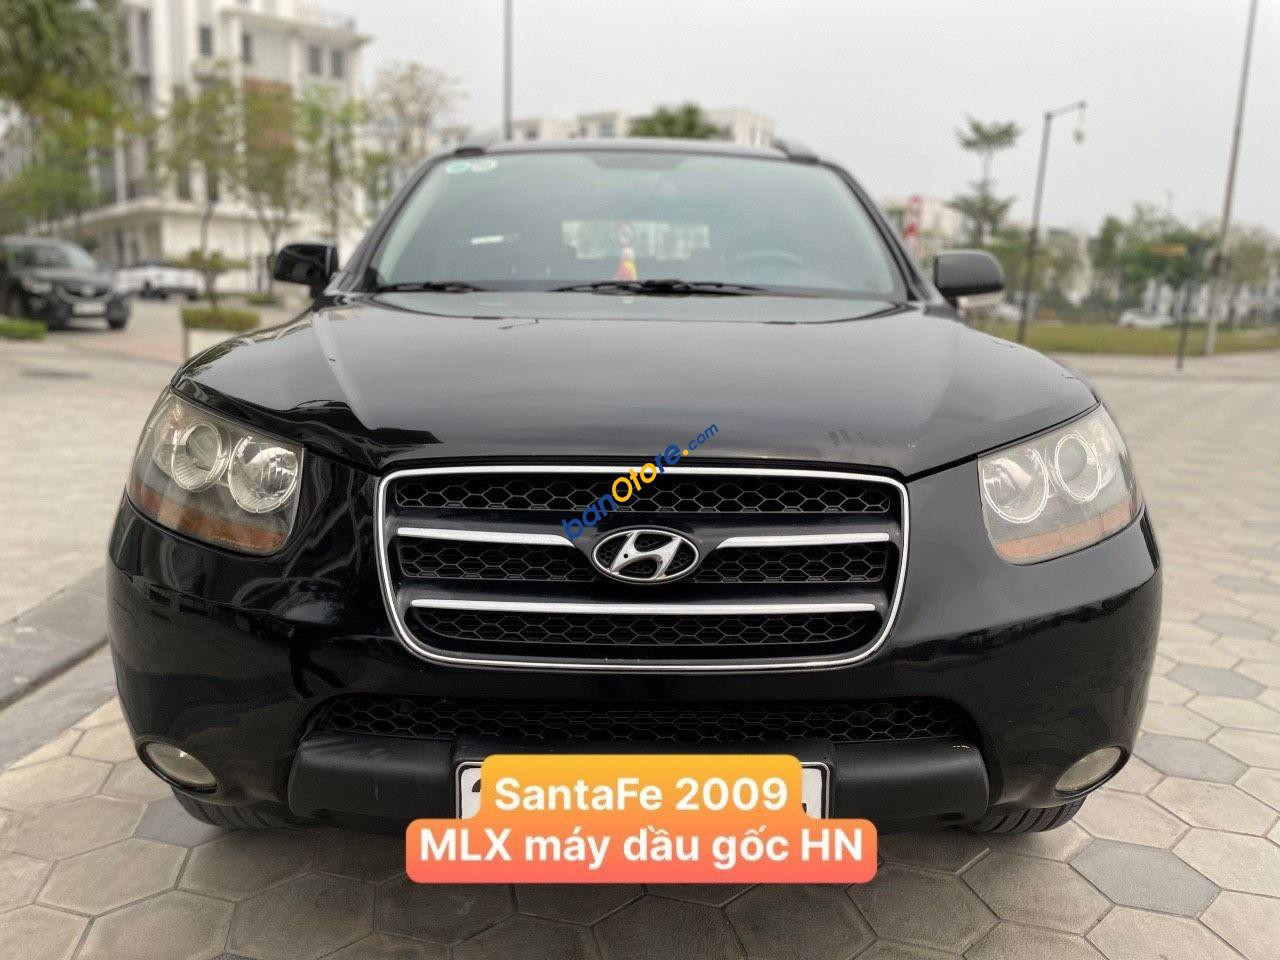 Hyundai Santa Fe 2009 - MLX full dầu 1 cầu, ghế điện